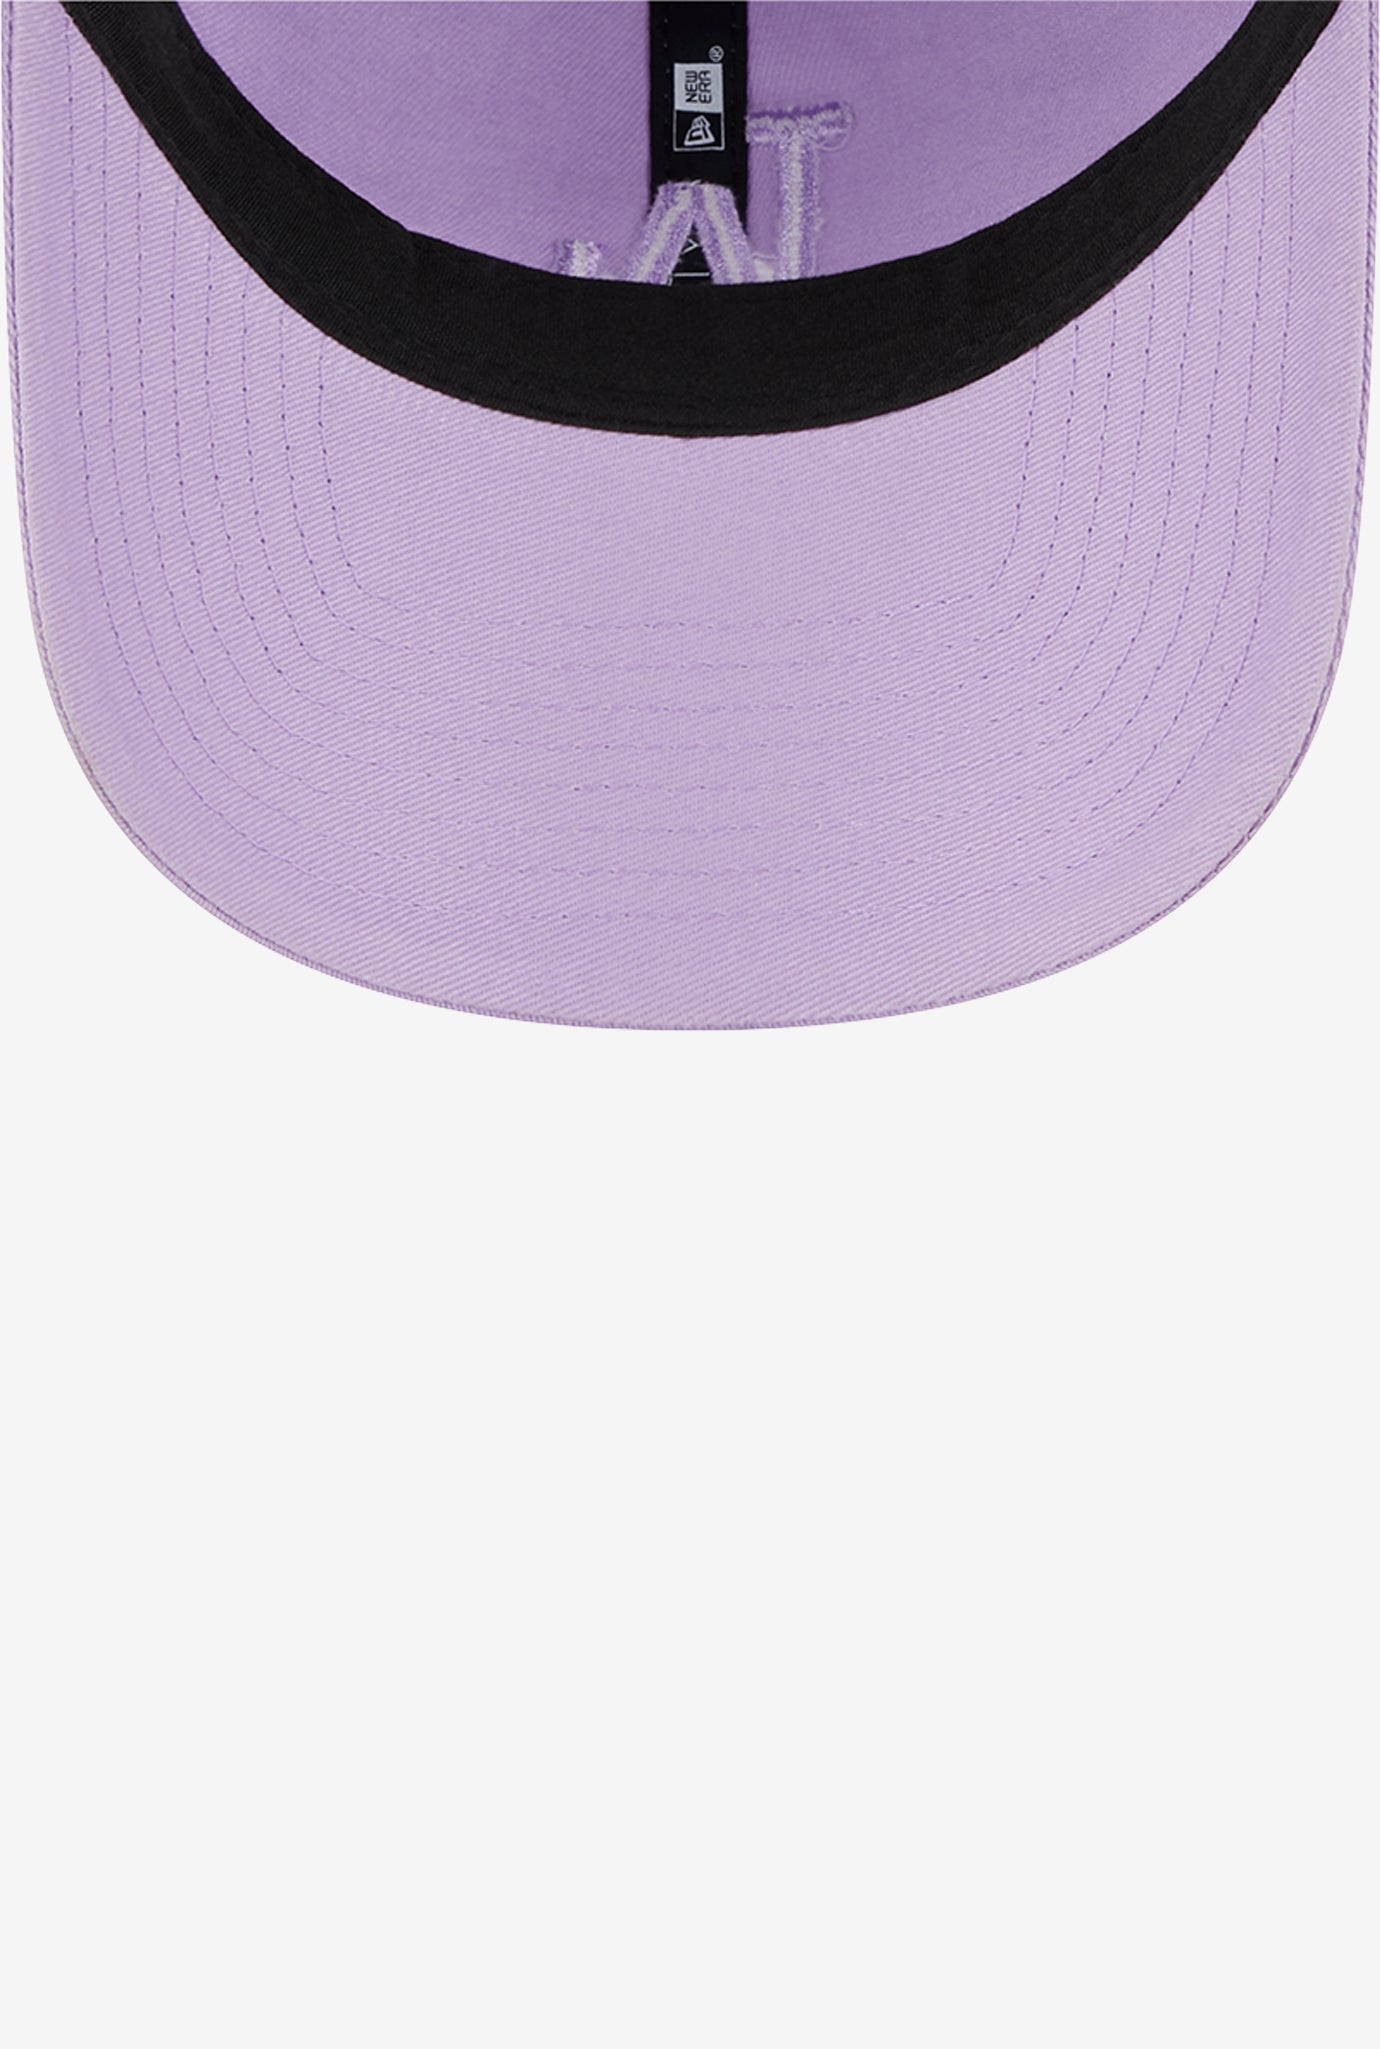 Los Angeles Dodgers 9TWENTY Color Pack - Lavender